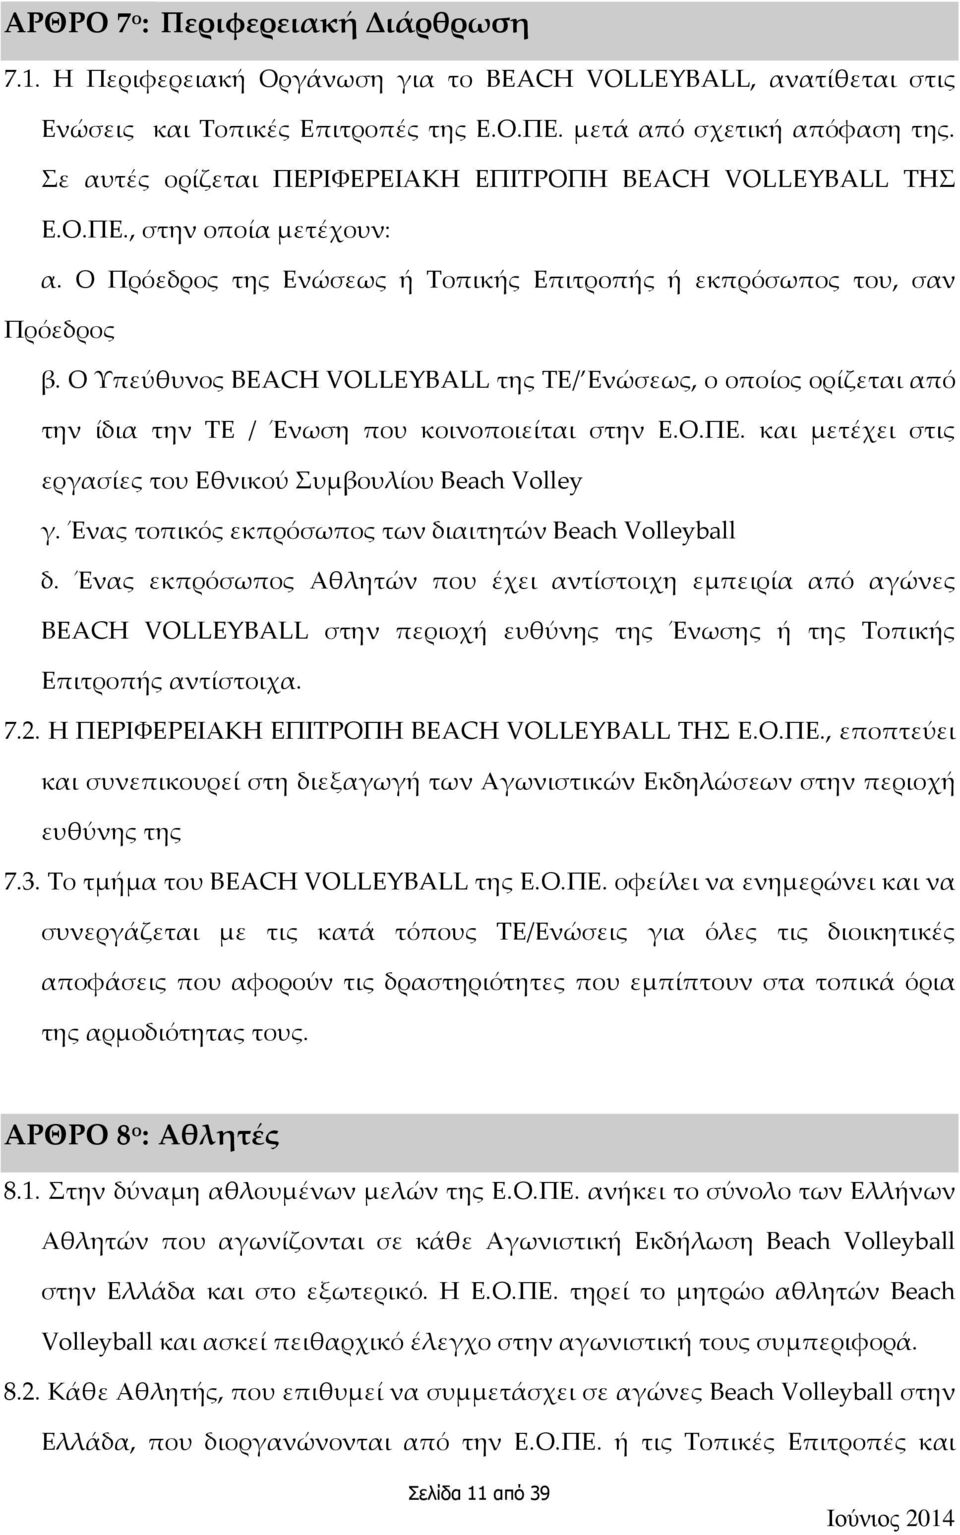 Ο Υπεύθυνος BEACH VOLLEYBALL της ΤΕ/ Ενώσεως, ο οποίος ορίζεται από την ίδια την ΤΕ / Ένωση που κοινοποιείται στην Ε.Ο.ΠΕ. και μετέχει στις εργασίες του Εθνικού Συμβουλίου Beach Volley γ.